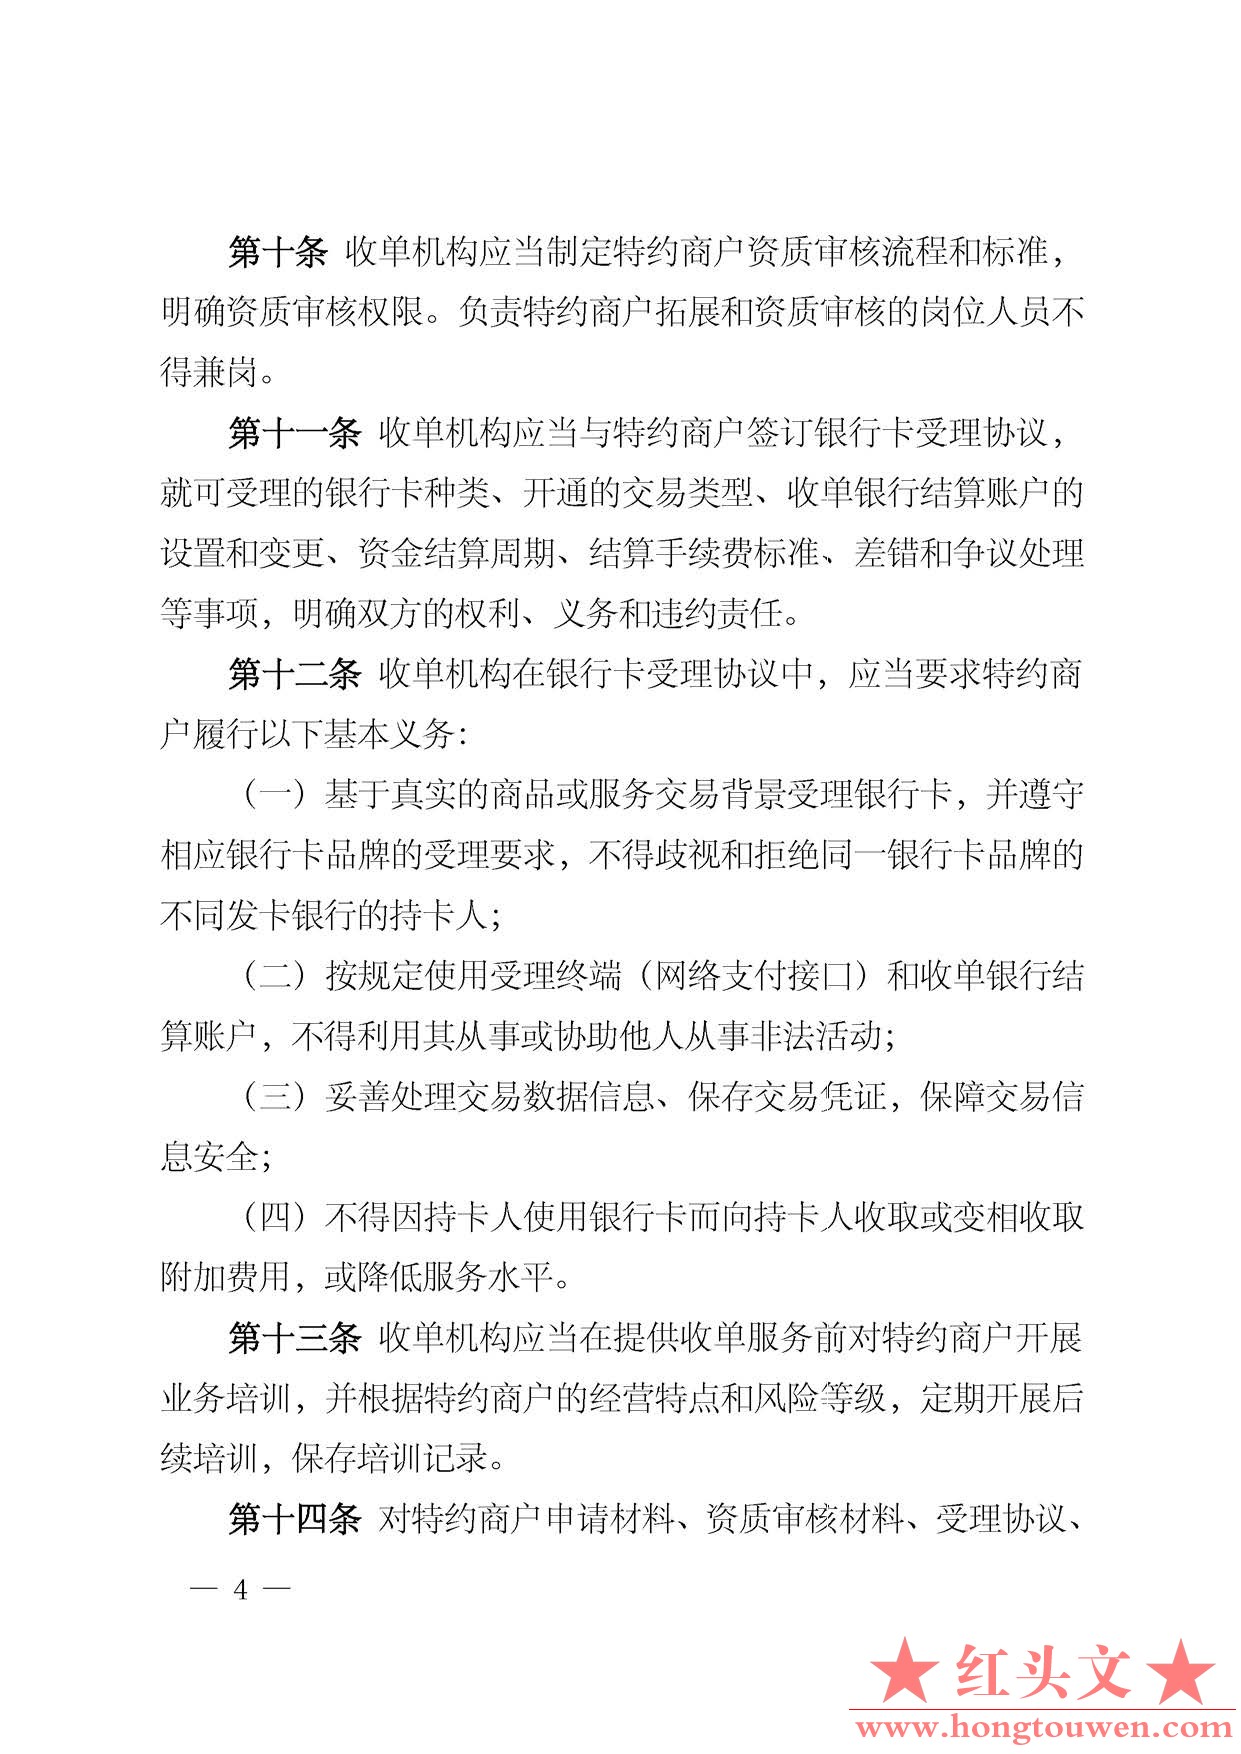 中国人民银行公告[2013]第9号-银行卡收单业务管理办法_页面_04.jpg